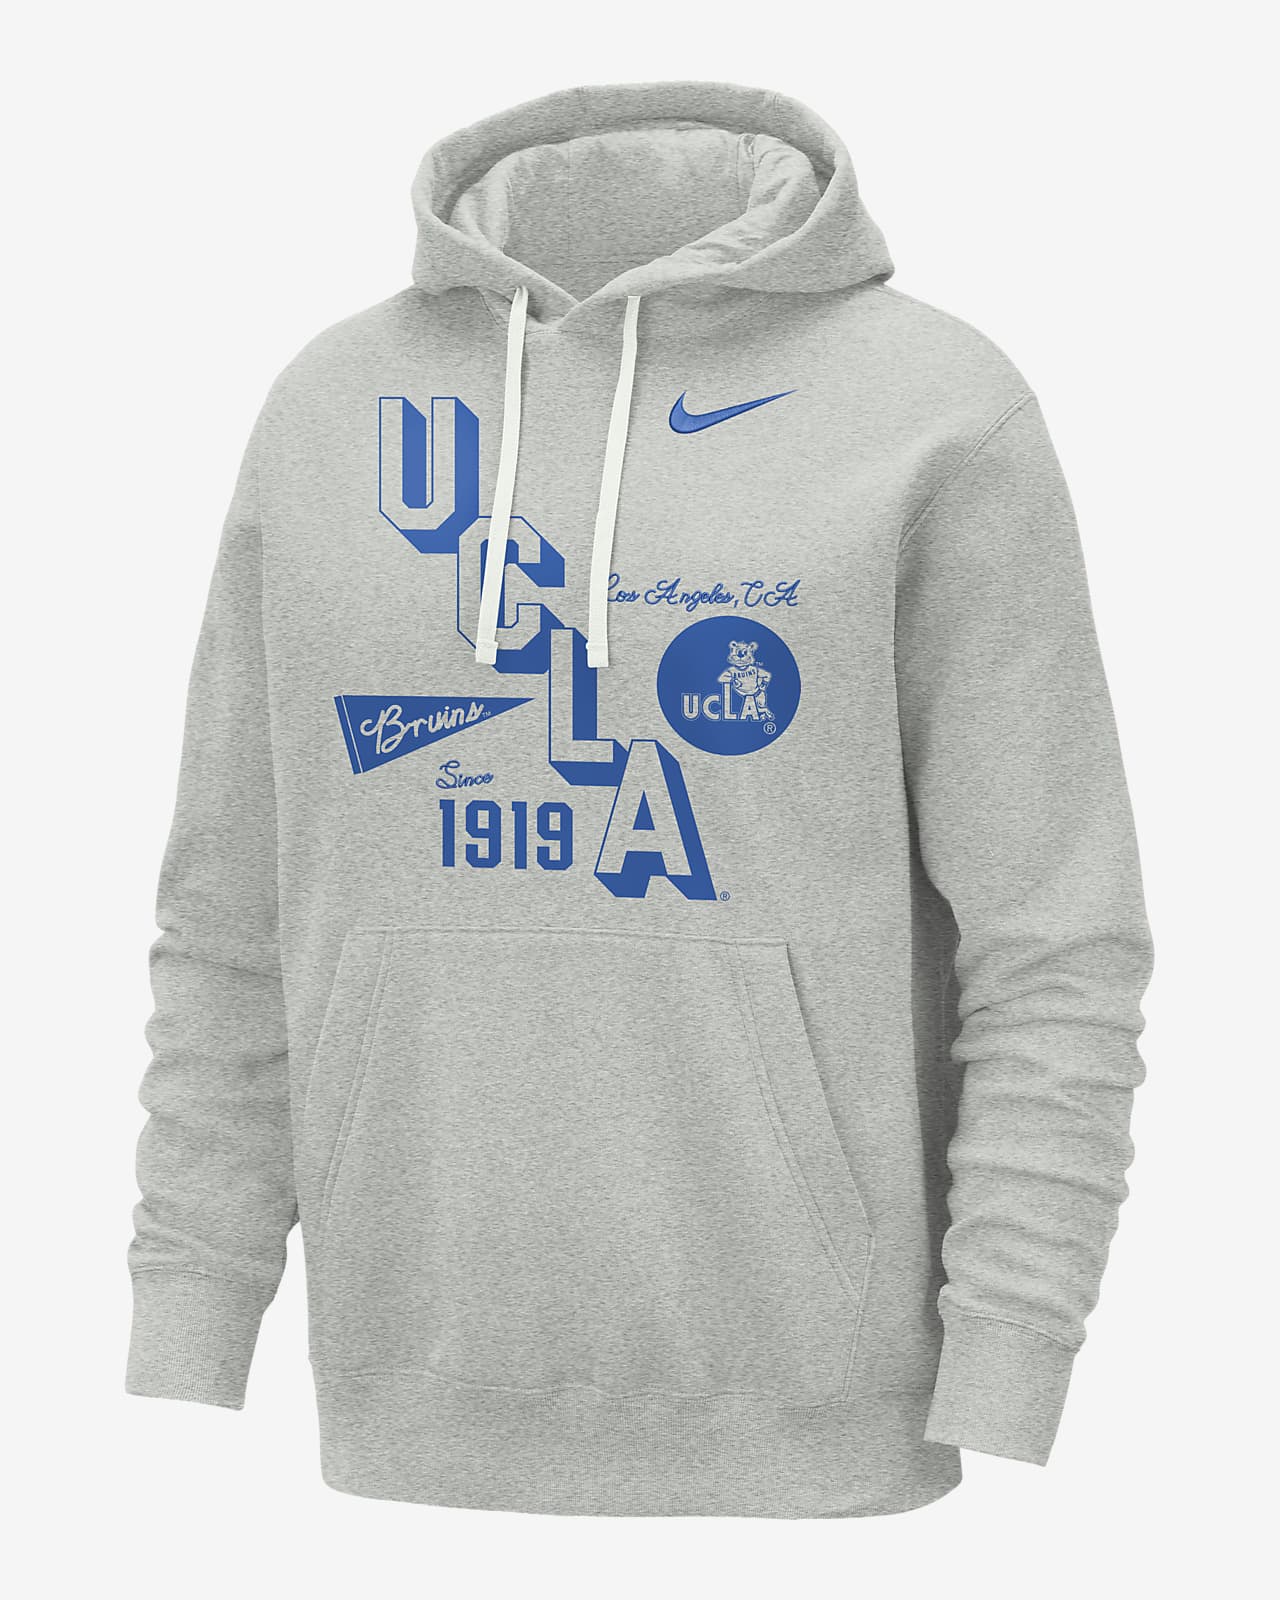 UCLA Club Men's Nike College Hoodie